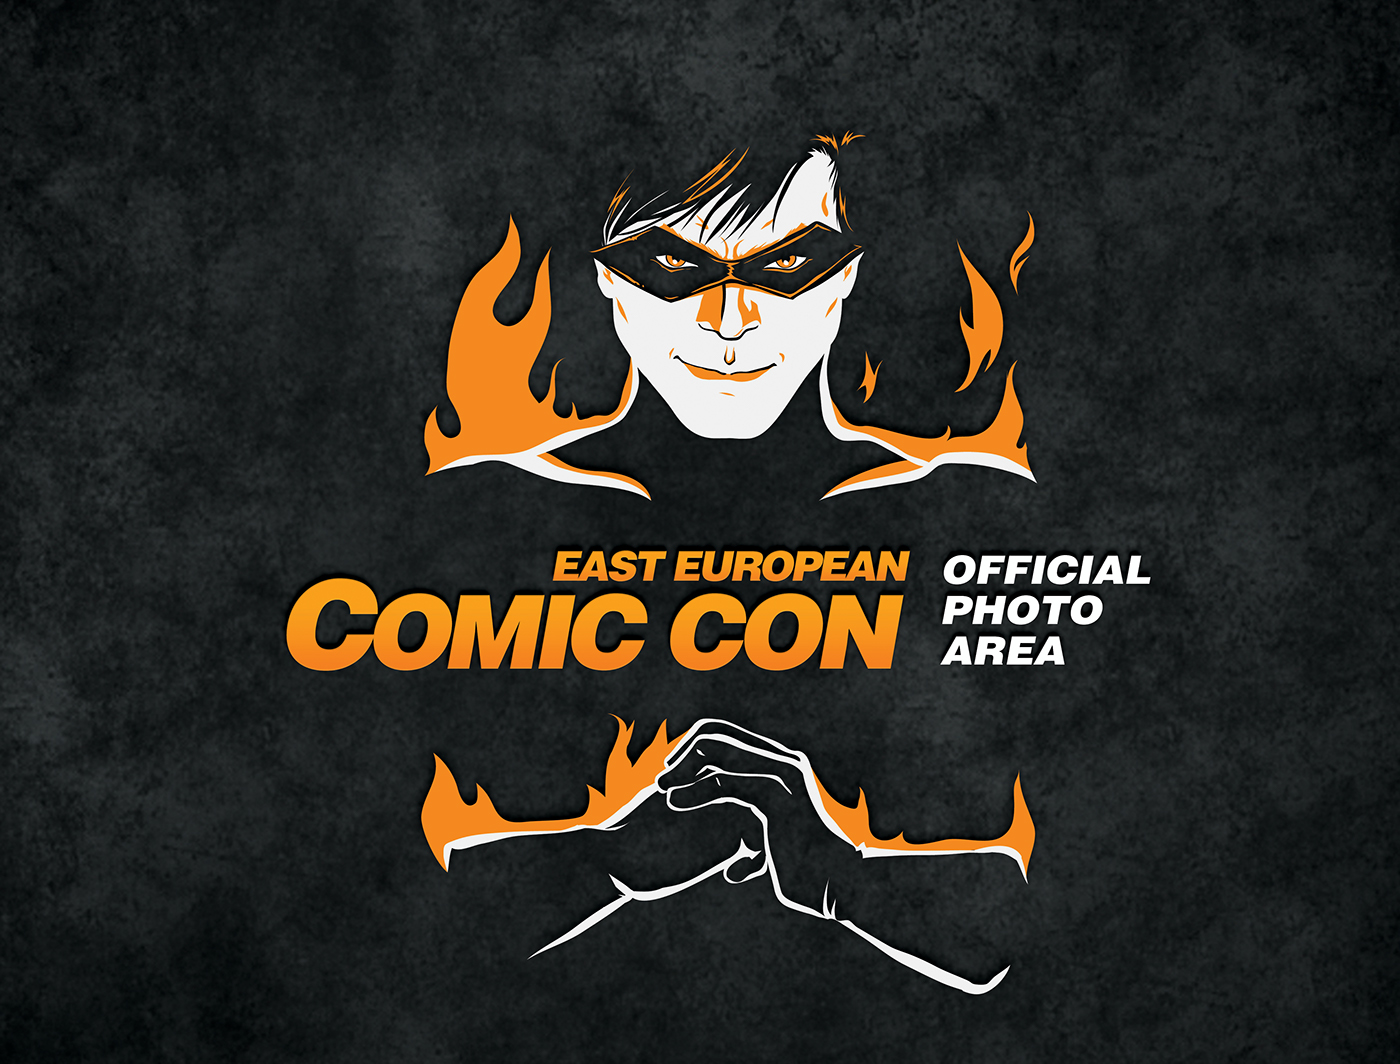 East European Comic Con E1687e24285437.5633230a0e08d